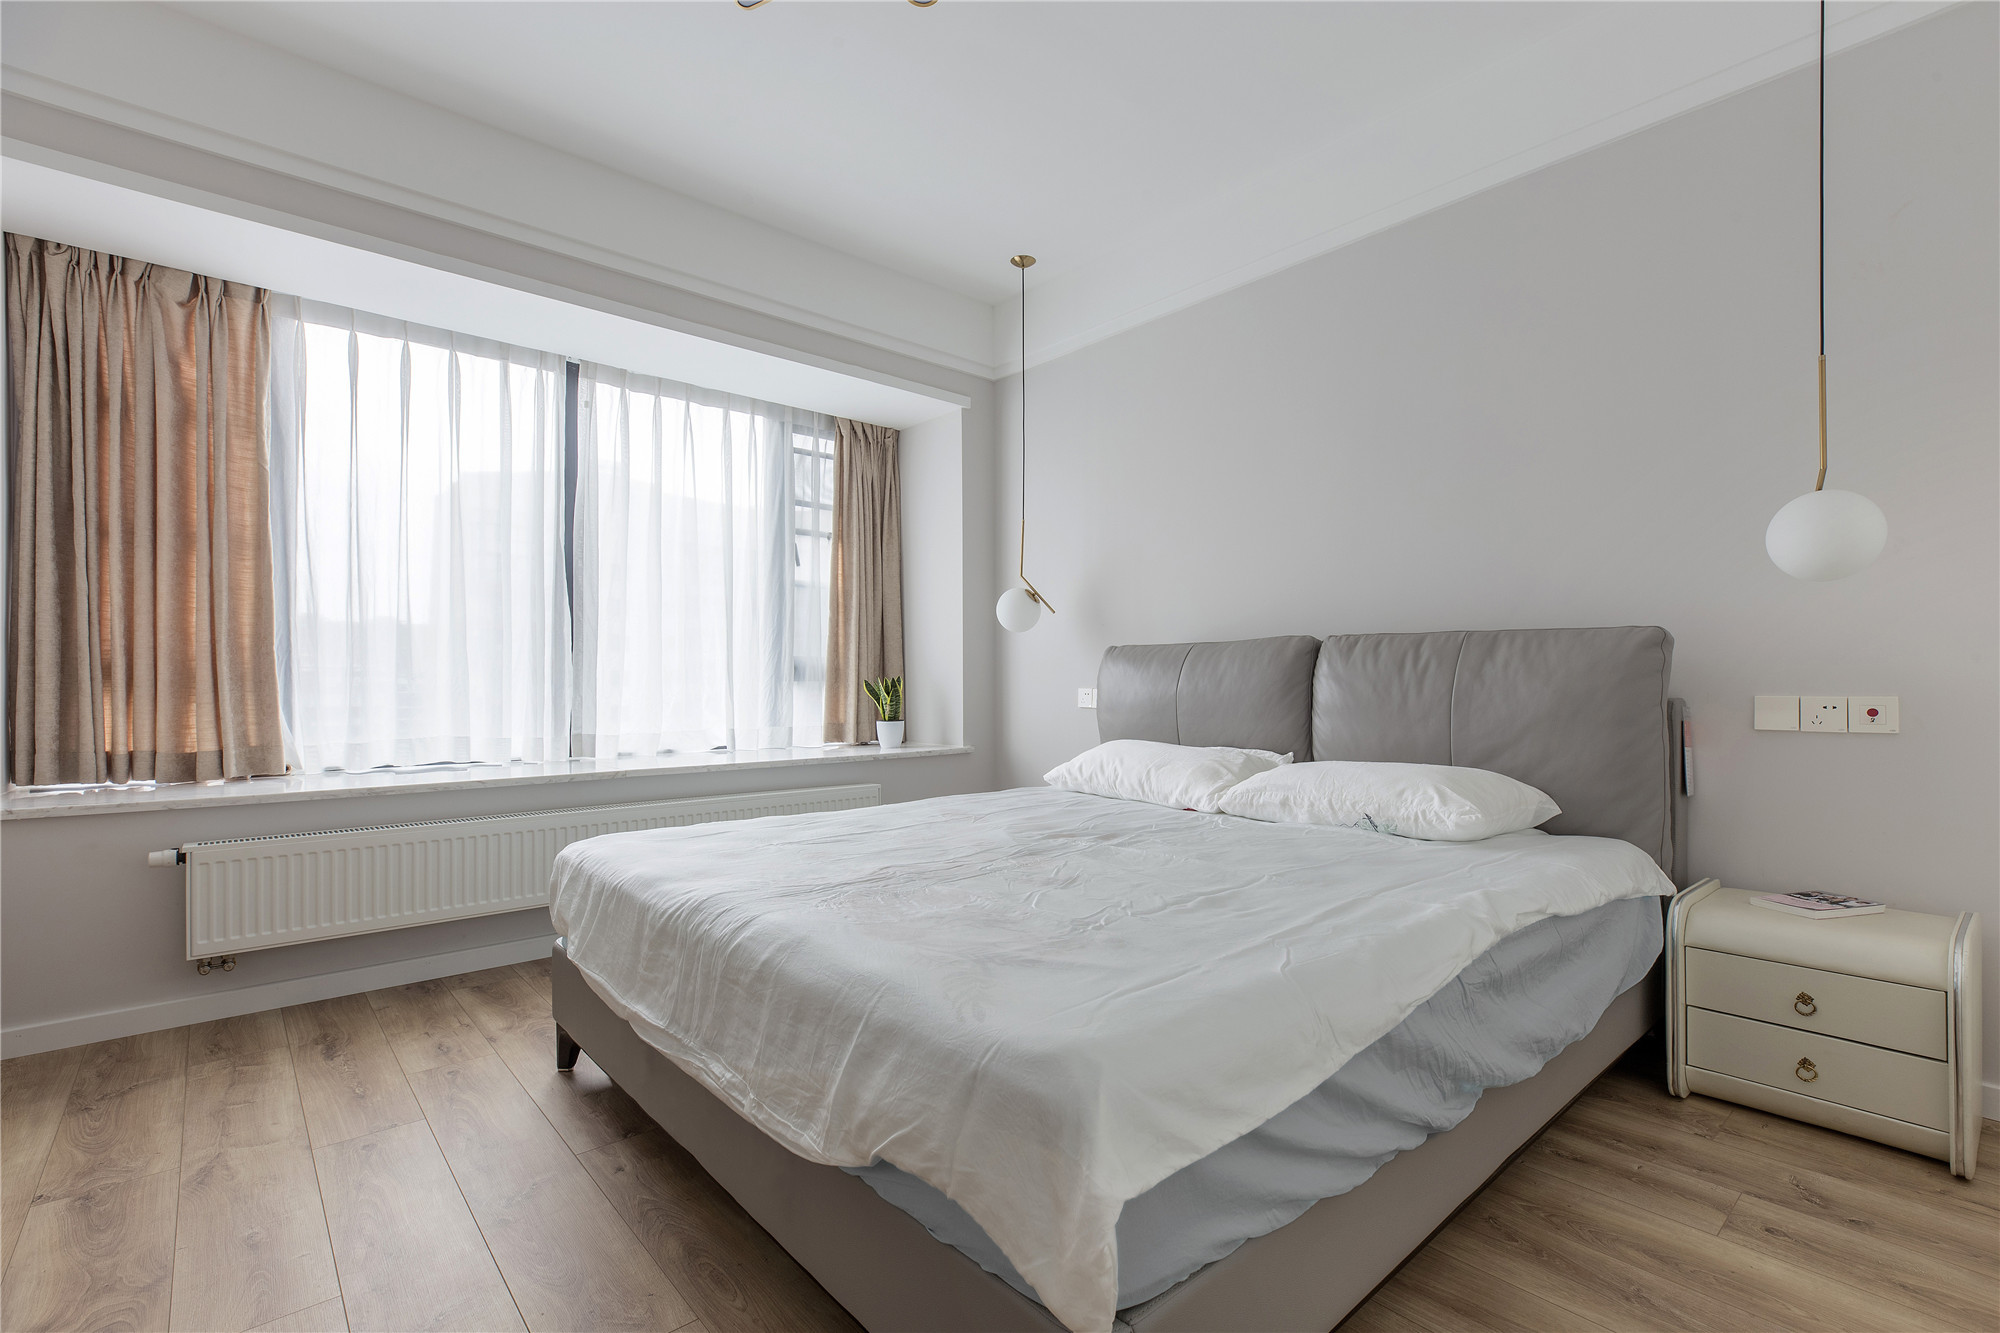 卧室走的是高冷现代风,大面积白色乳胶漆墙面配上木地板,低饱和度的